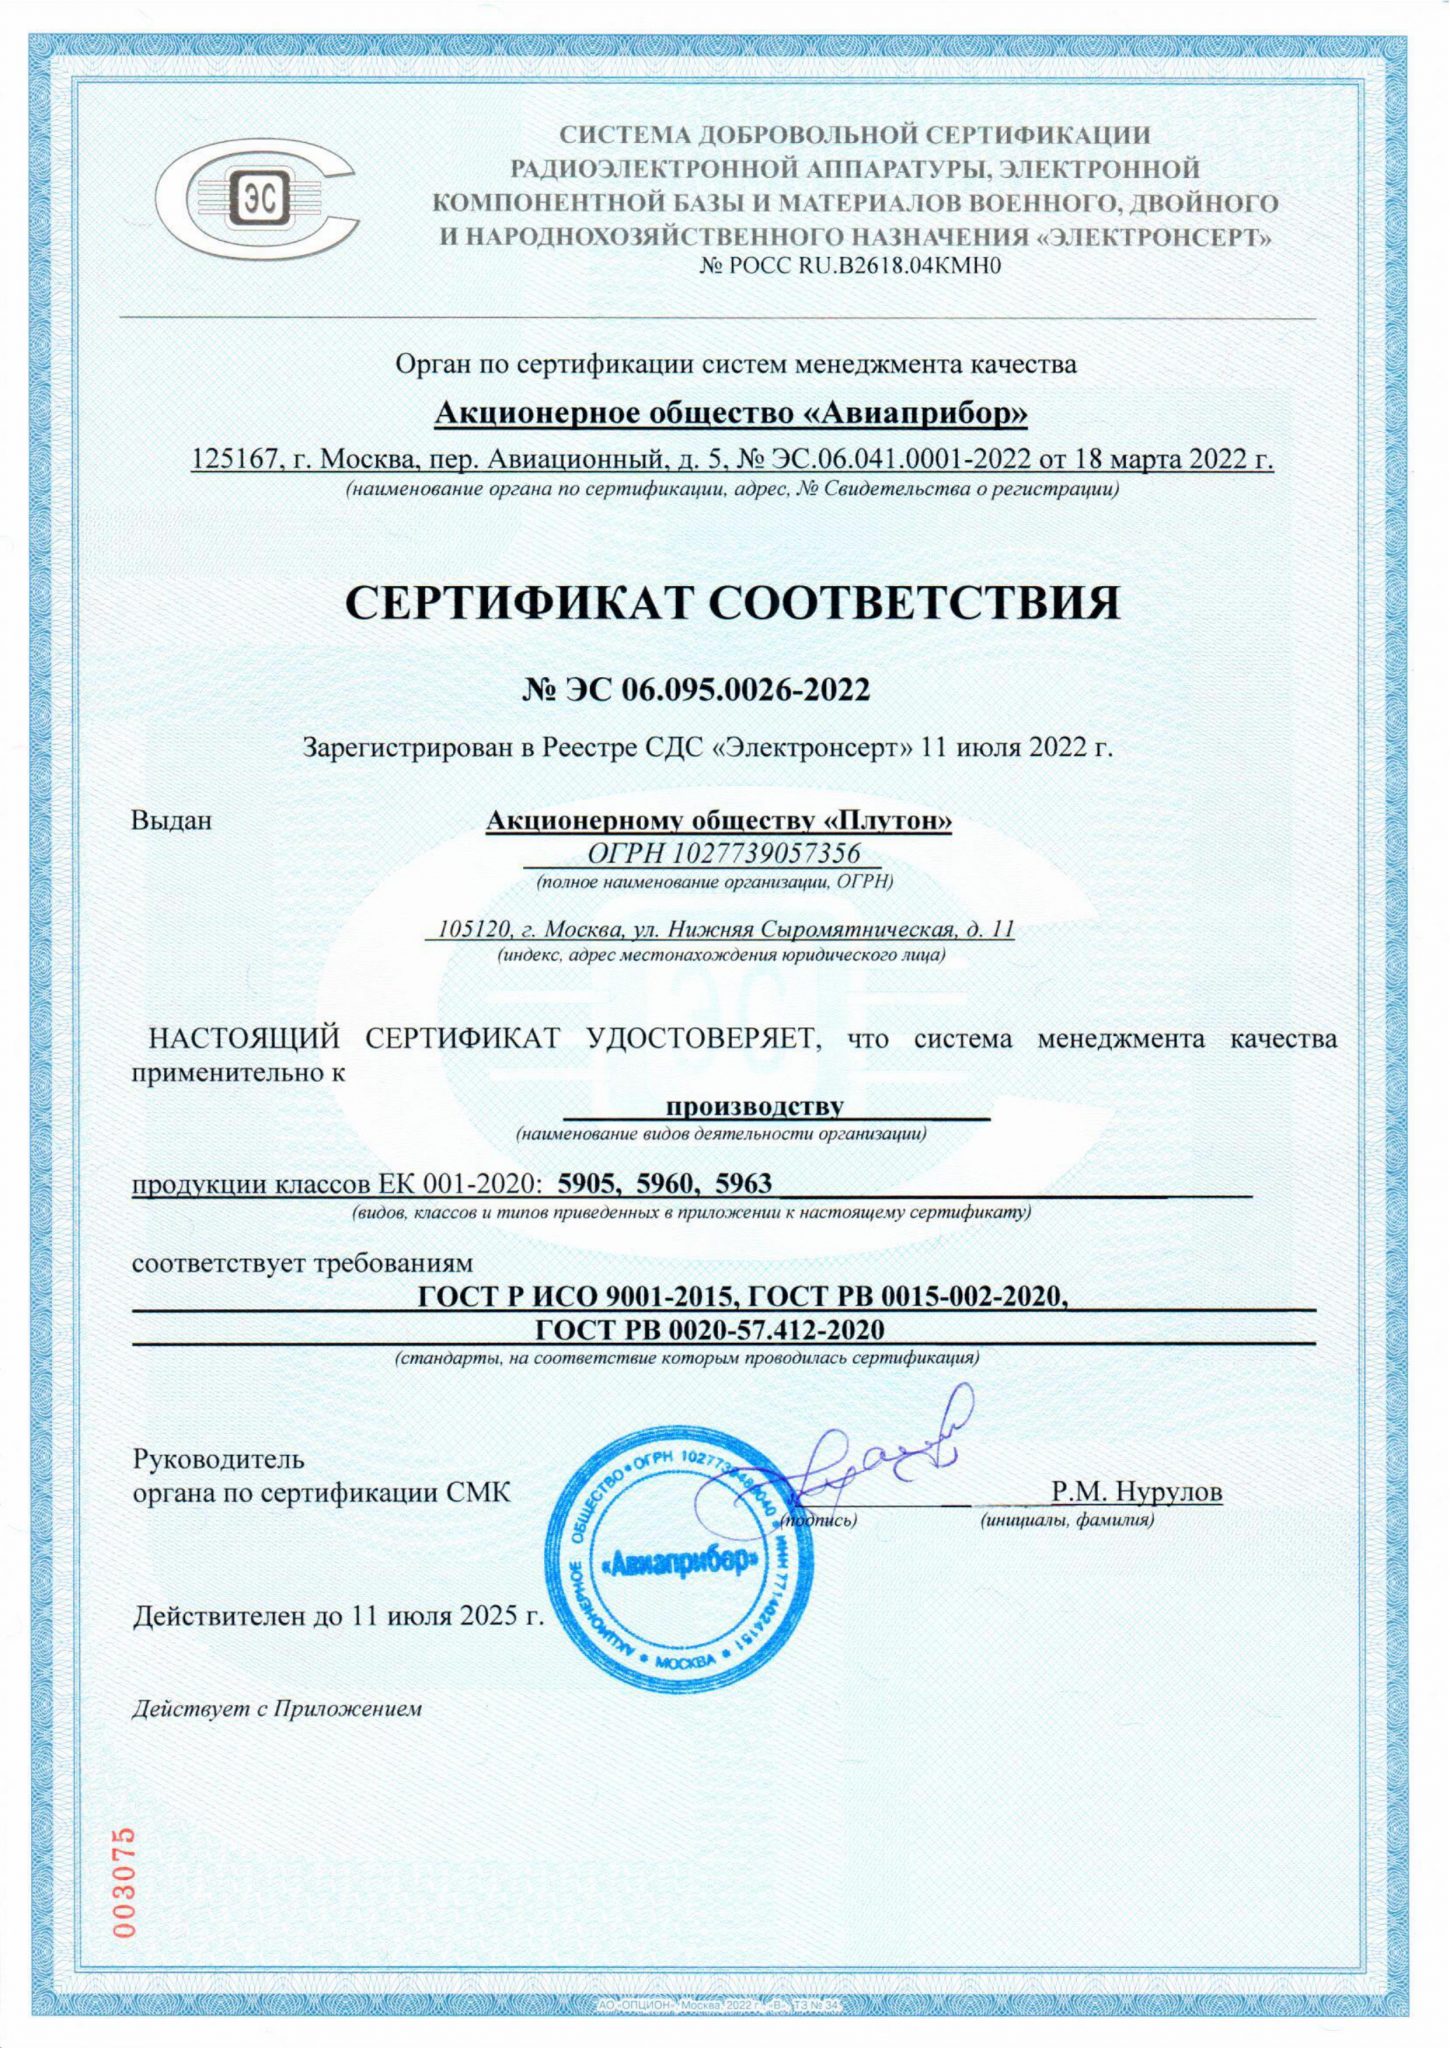 Сертификат АО Плутон № ЭС 06.095.0026-2022 от 11.07.2022 до 11.07.2025 jpg